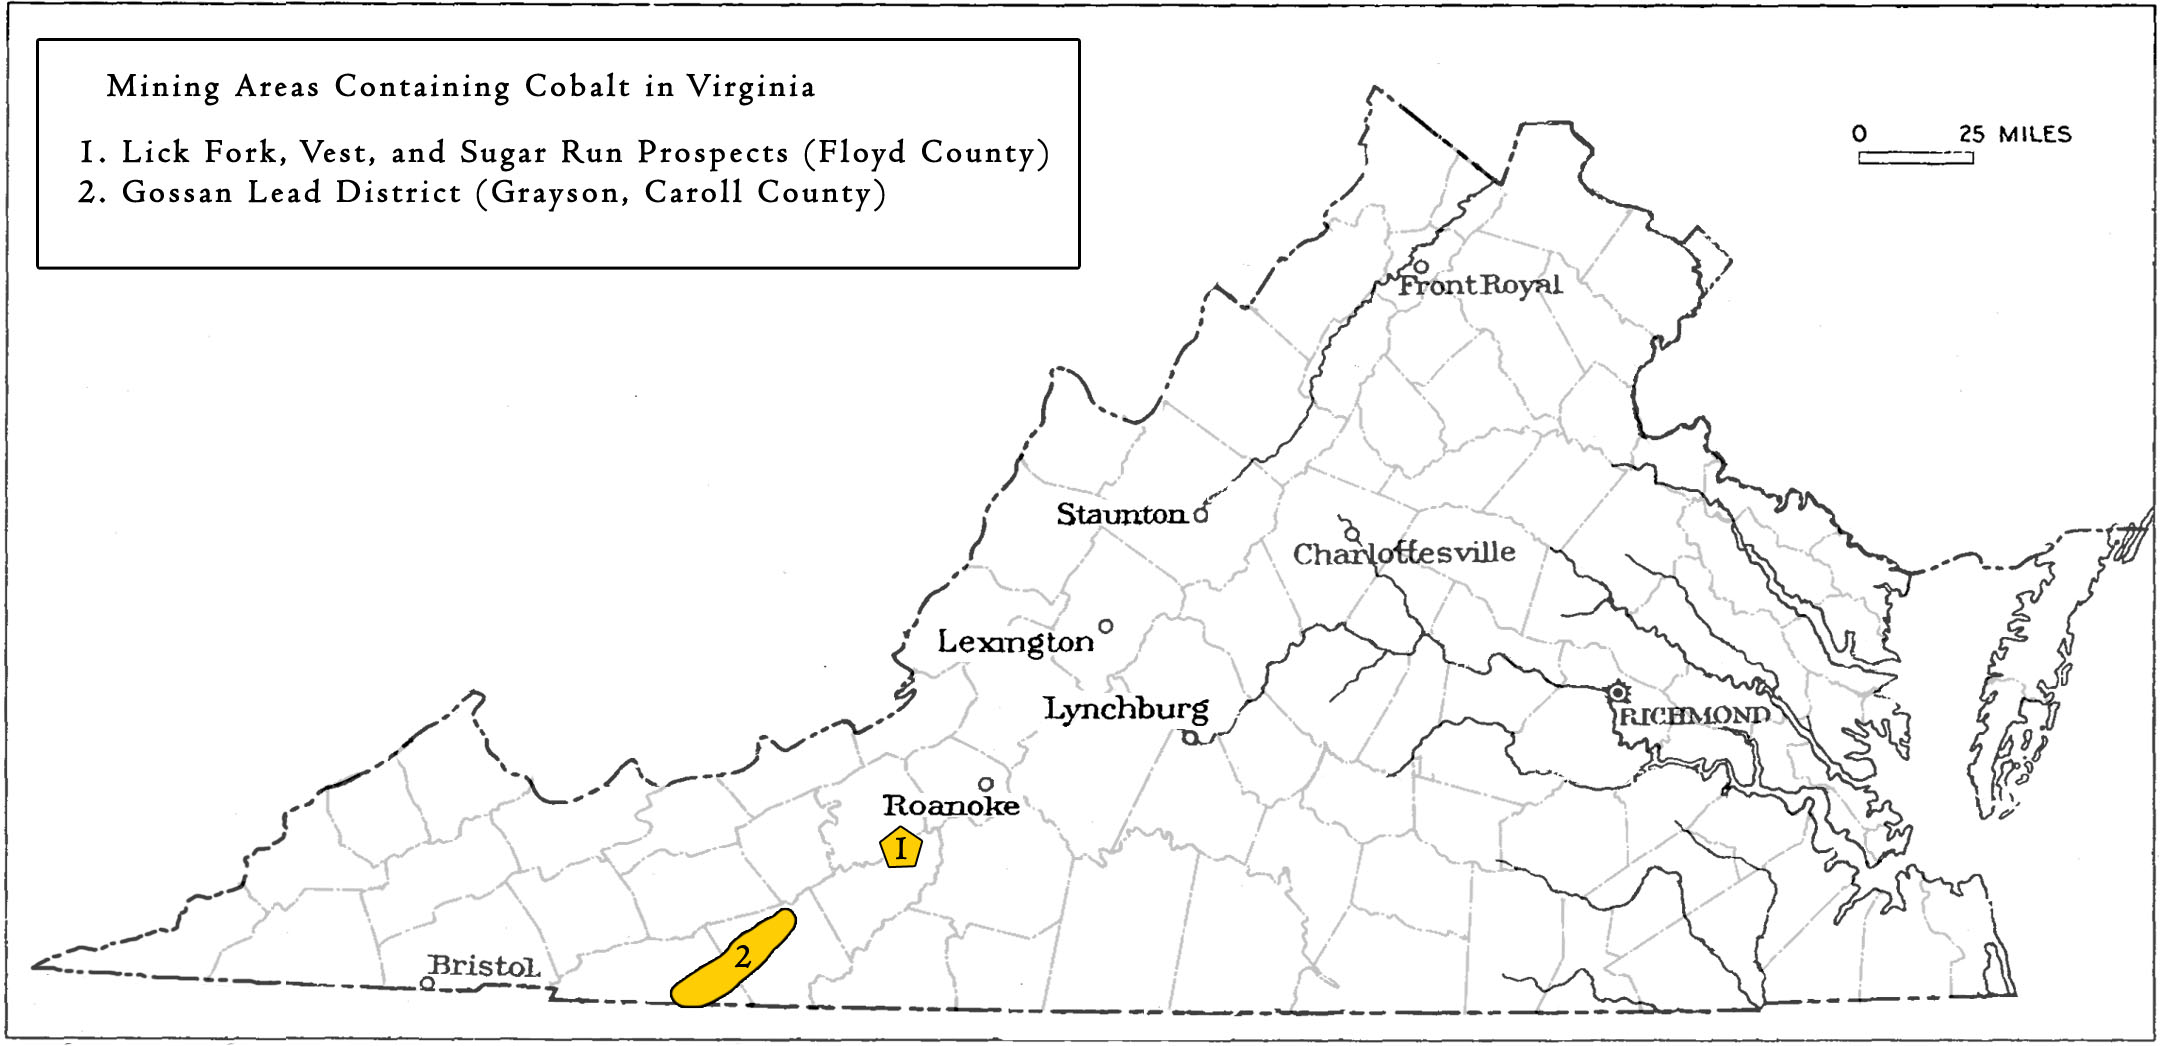 Mining locations containing Cobalt in Virginia. 